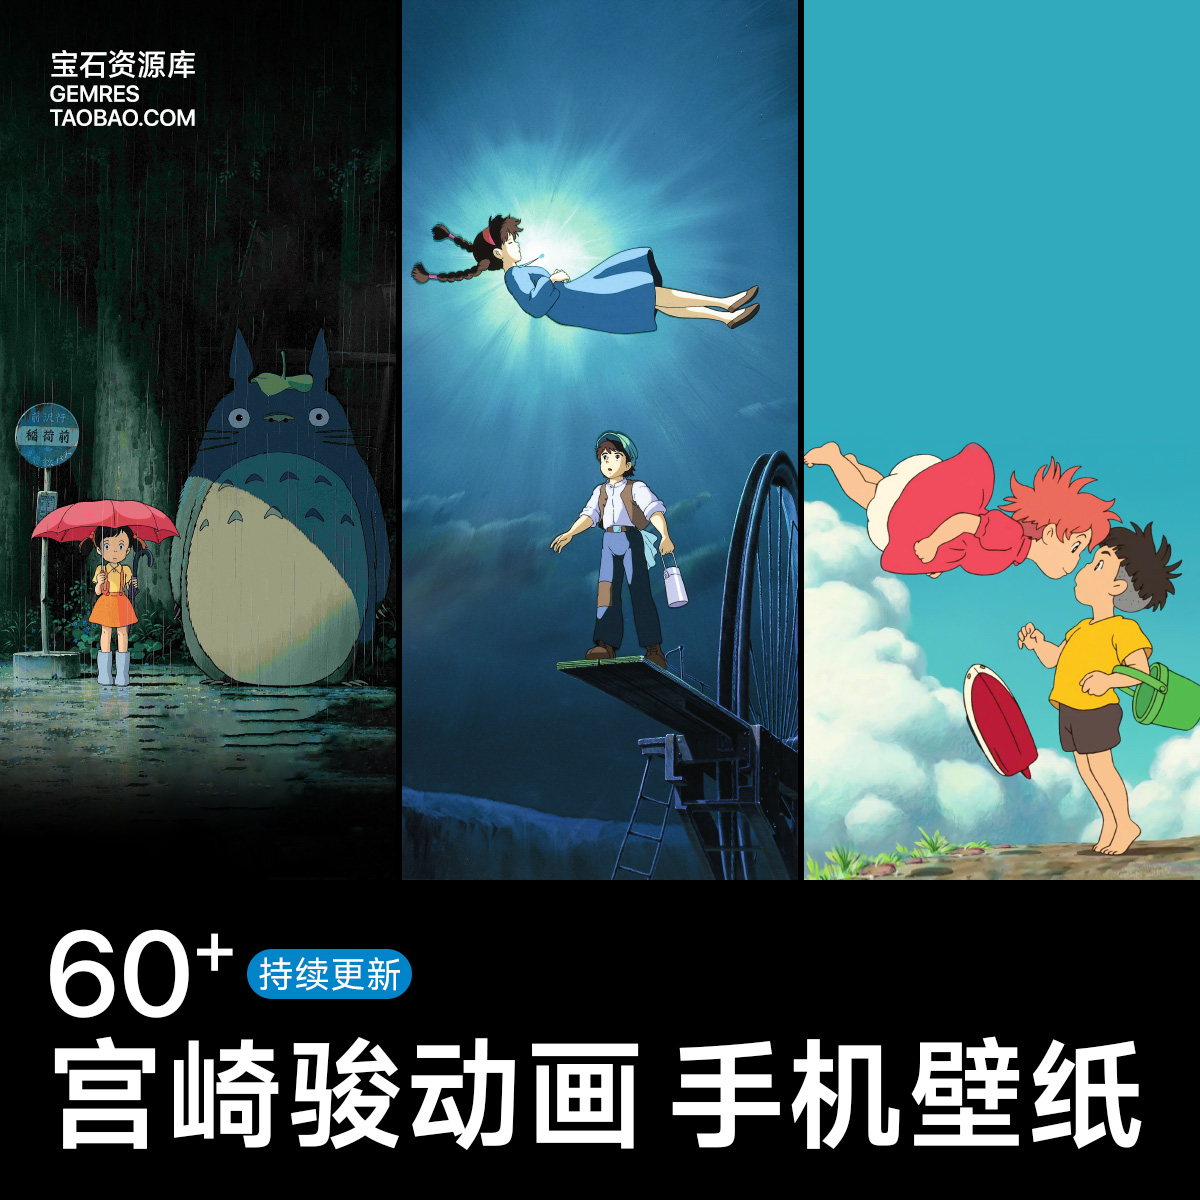 宫崎骏动画电影系列手机壁纸iPhone华为小米手机动漫卡通锁屏墙纸